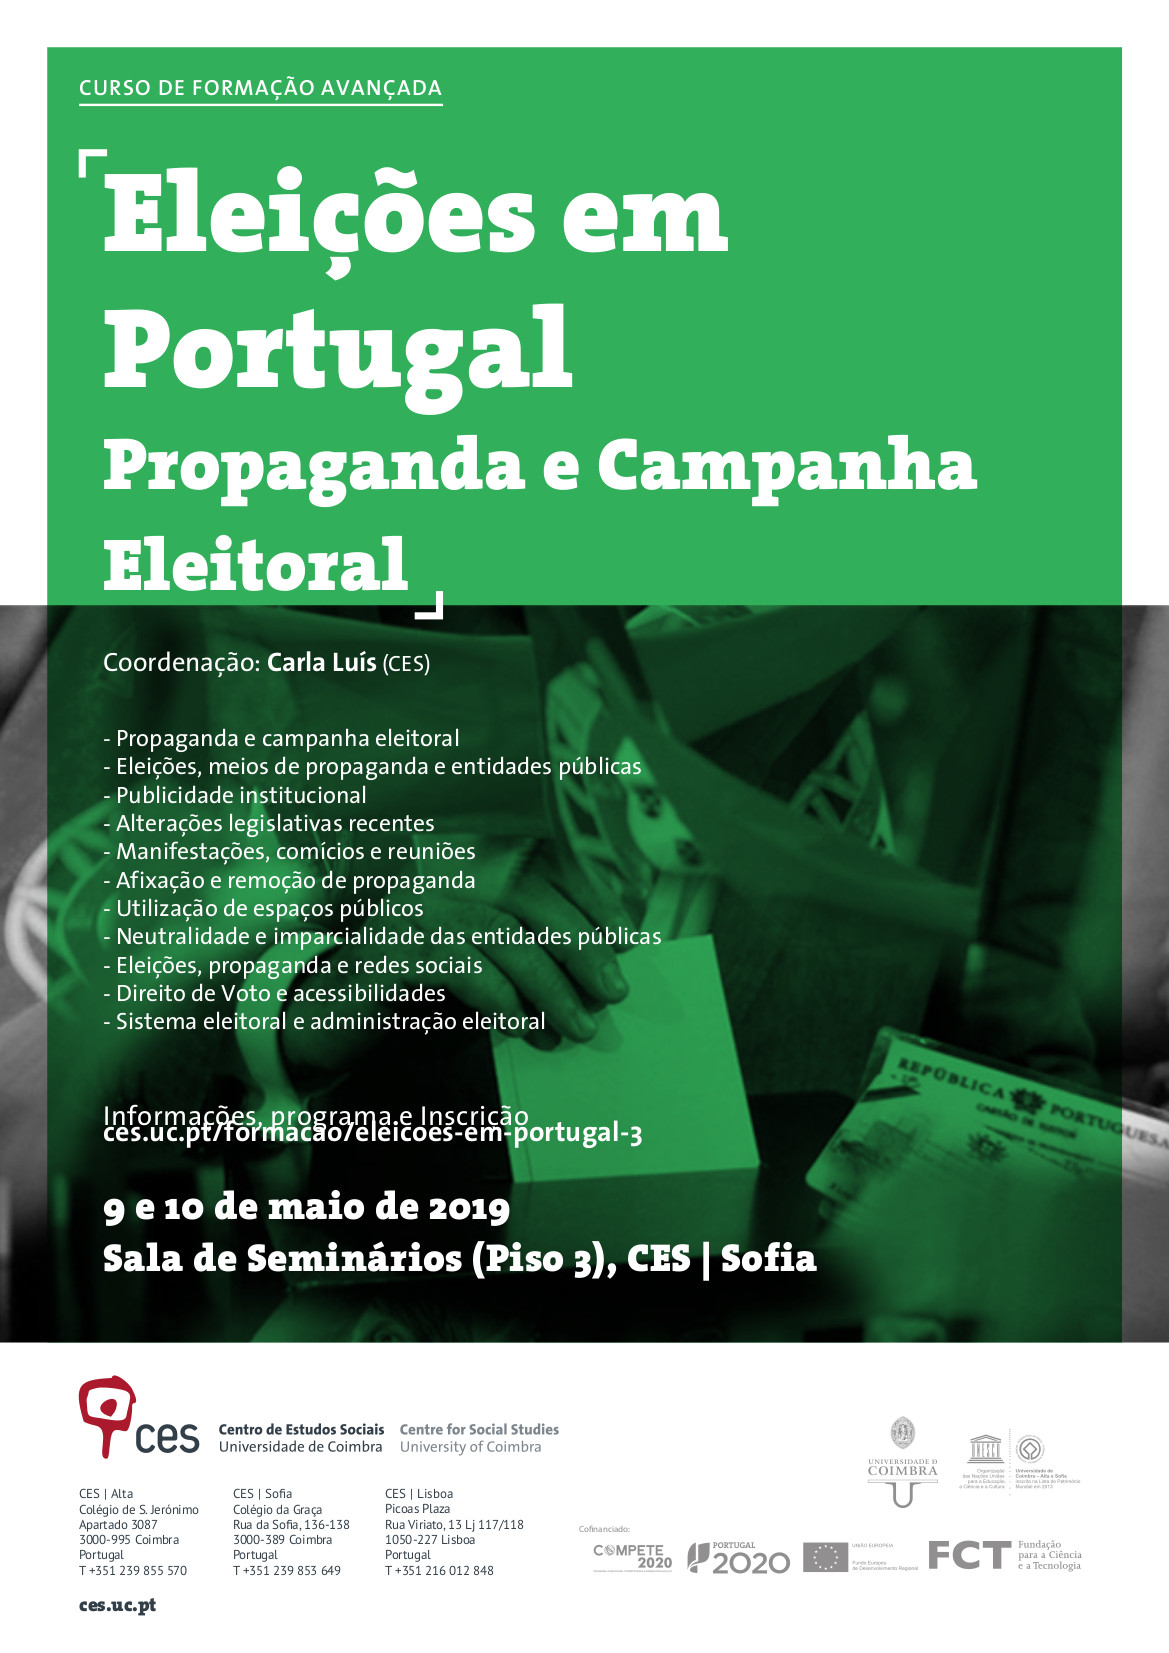 Eleições em Portugal Propaganda e Campanha Eleitoral